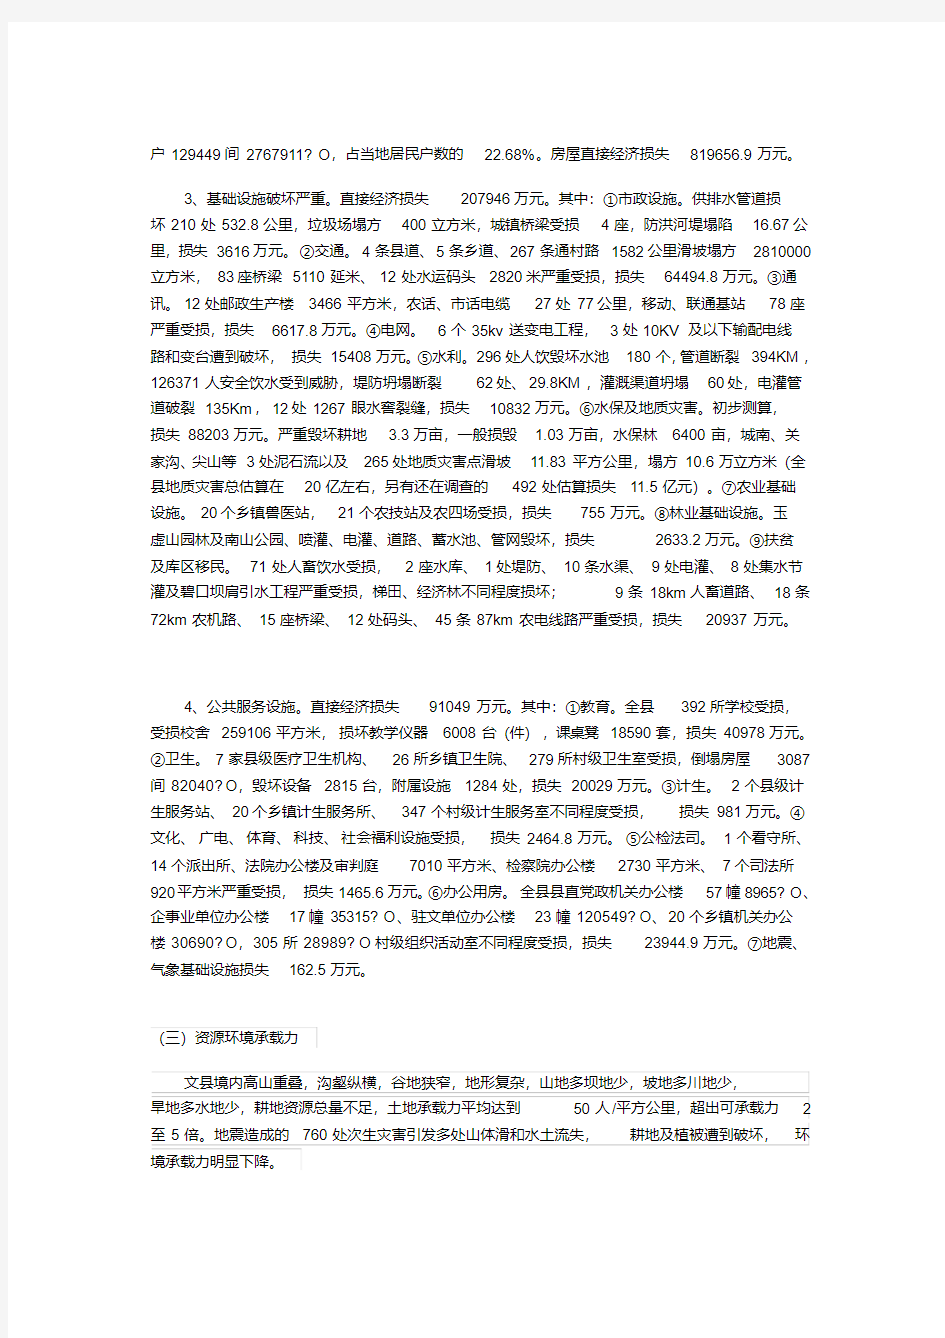 512汶川地震文县灾后恢复重建总体规划.pdf